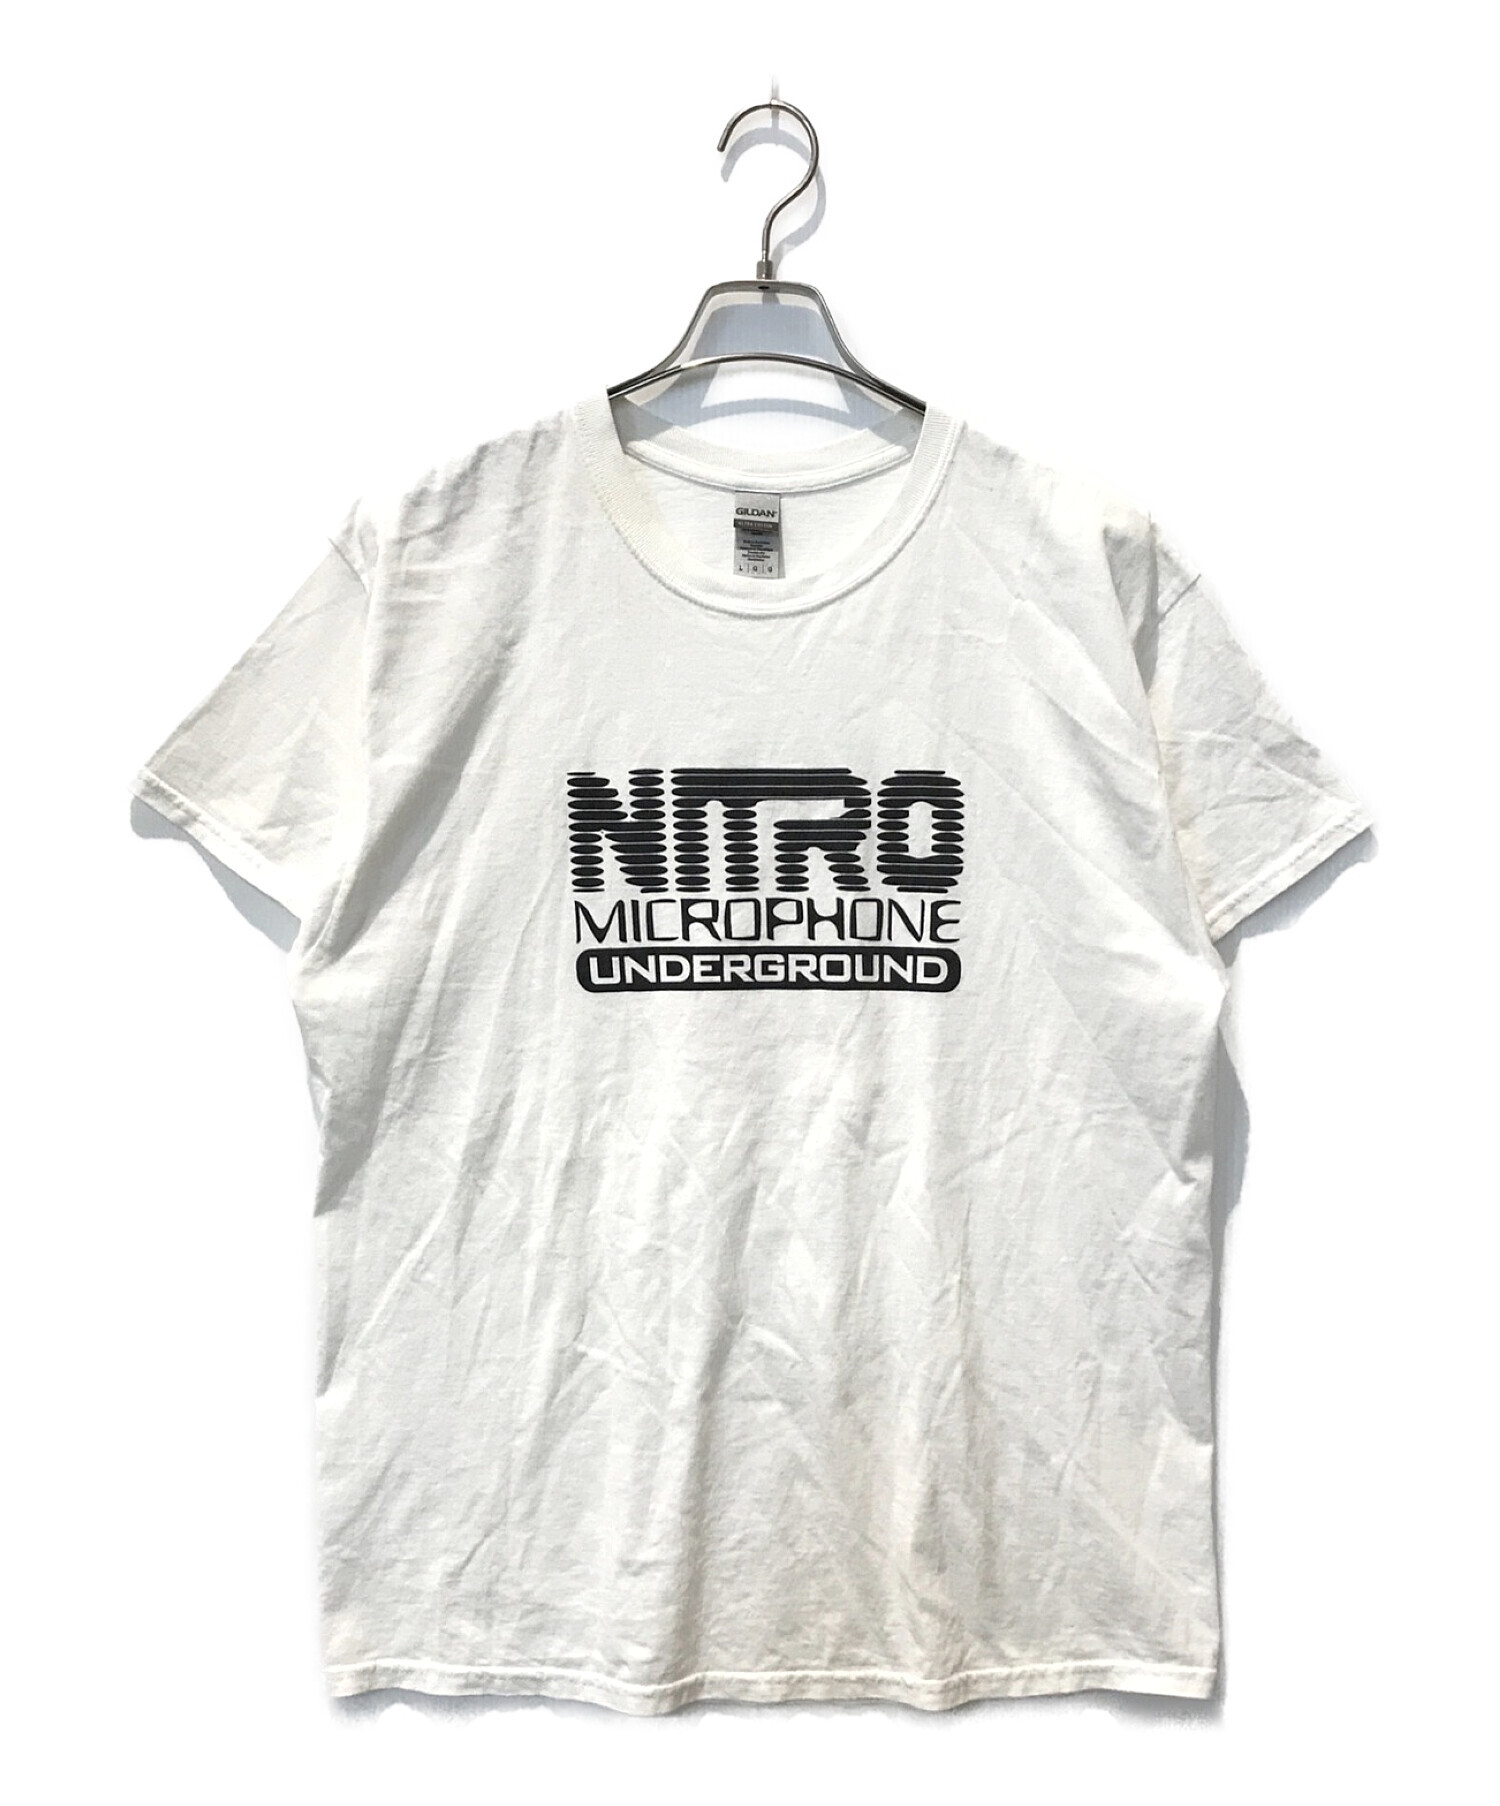 nitro microphone underground (ニトロ・マイクロフォン・アンダーグラウンド) ロゴTシャツ ホワイト サイズ:L